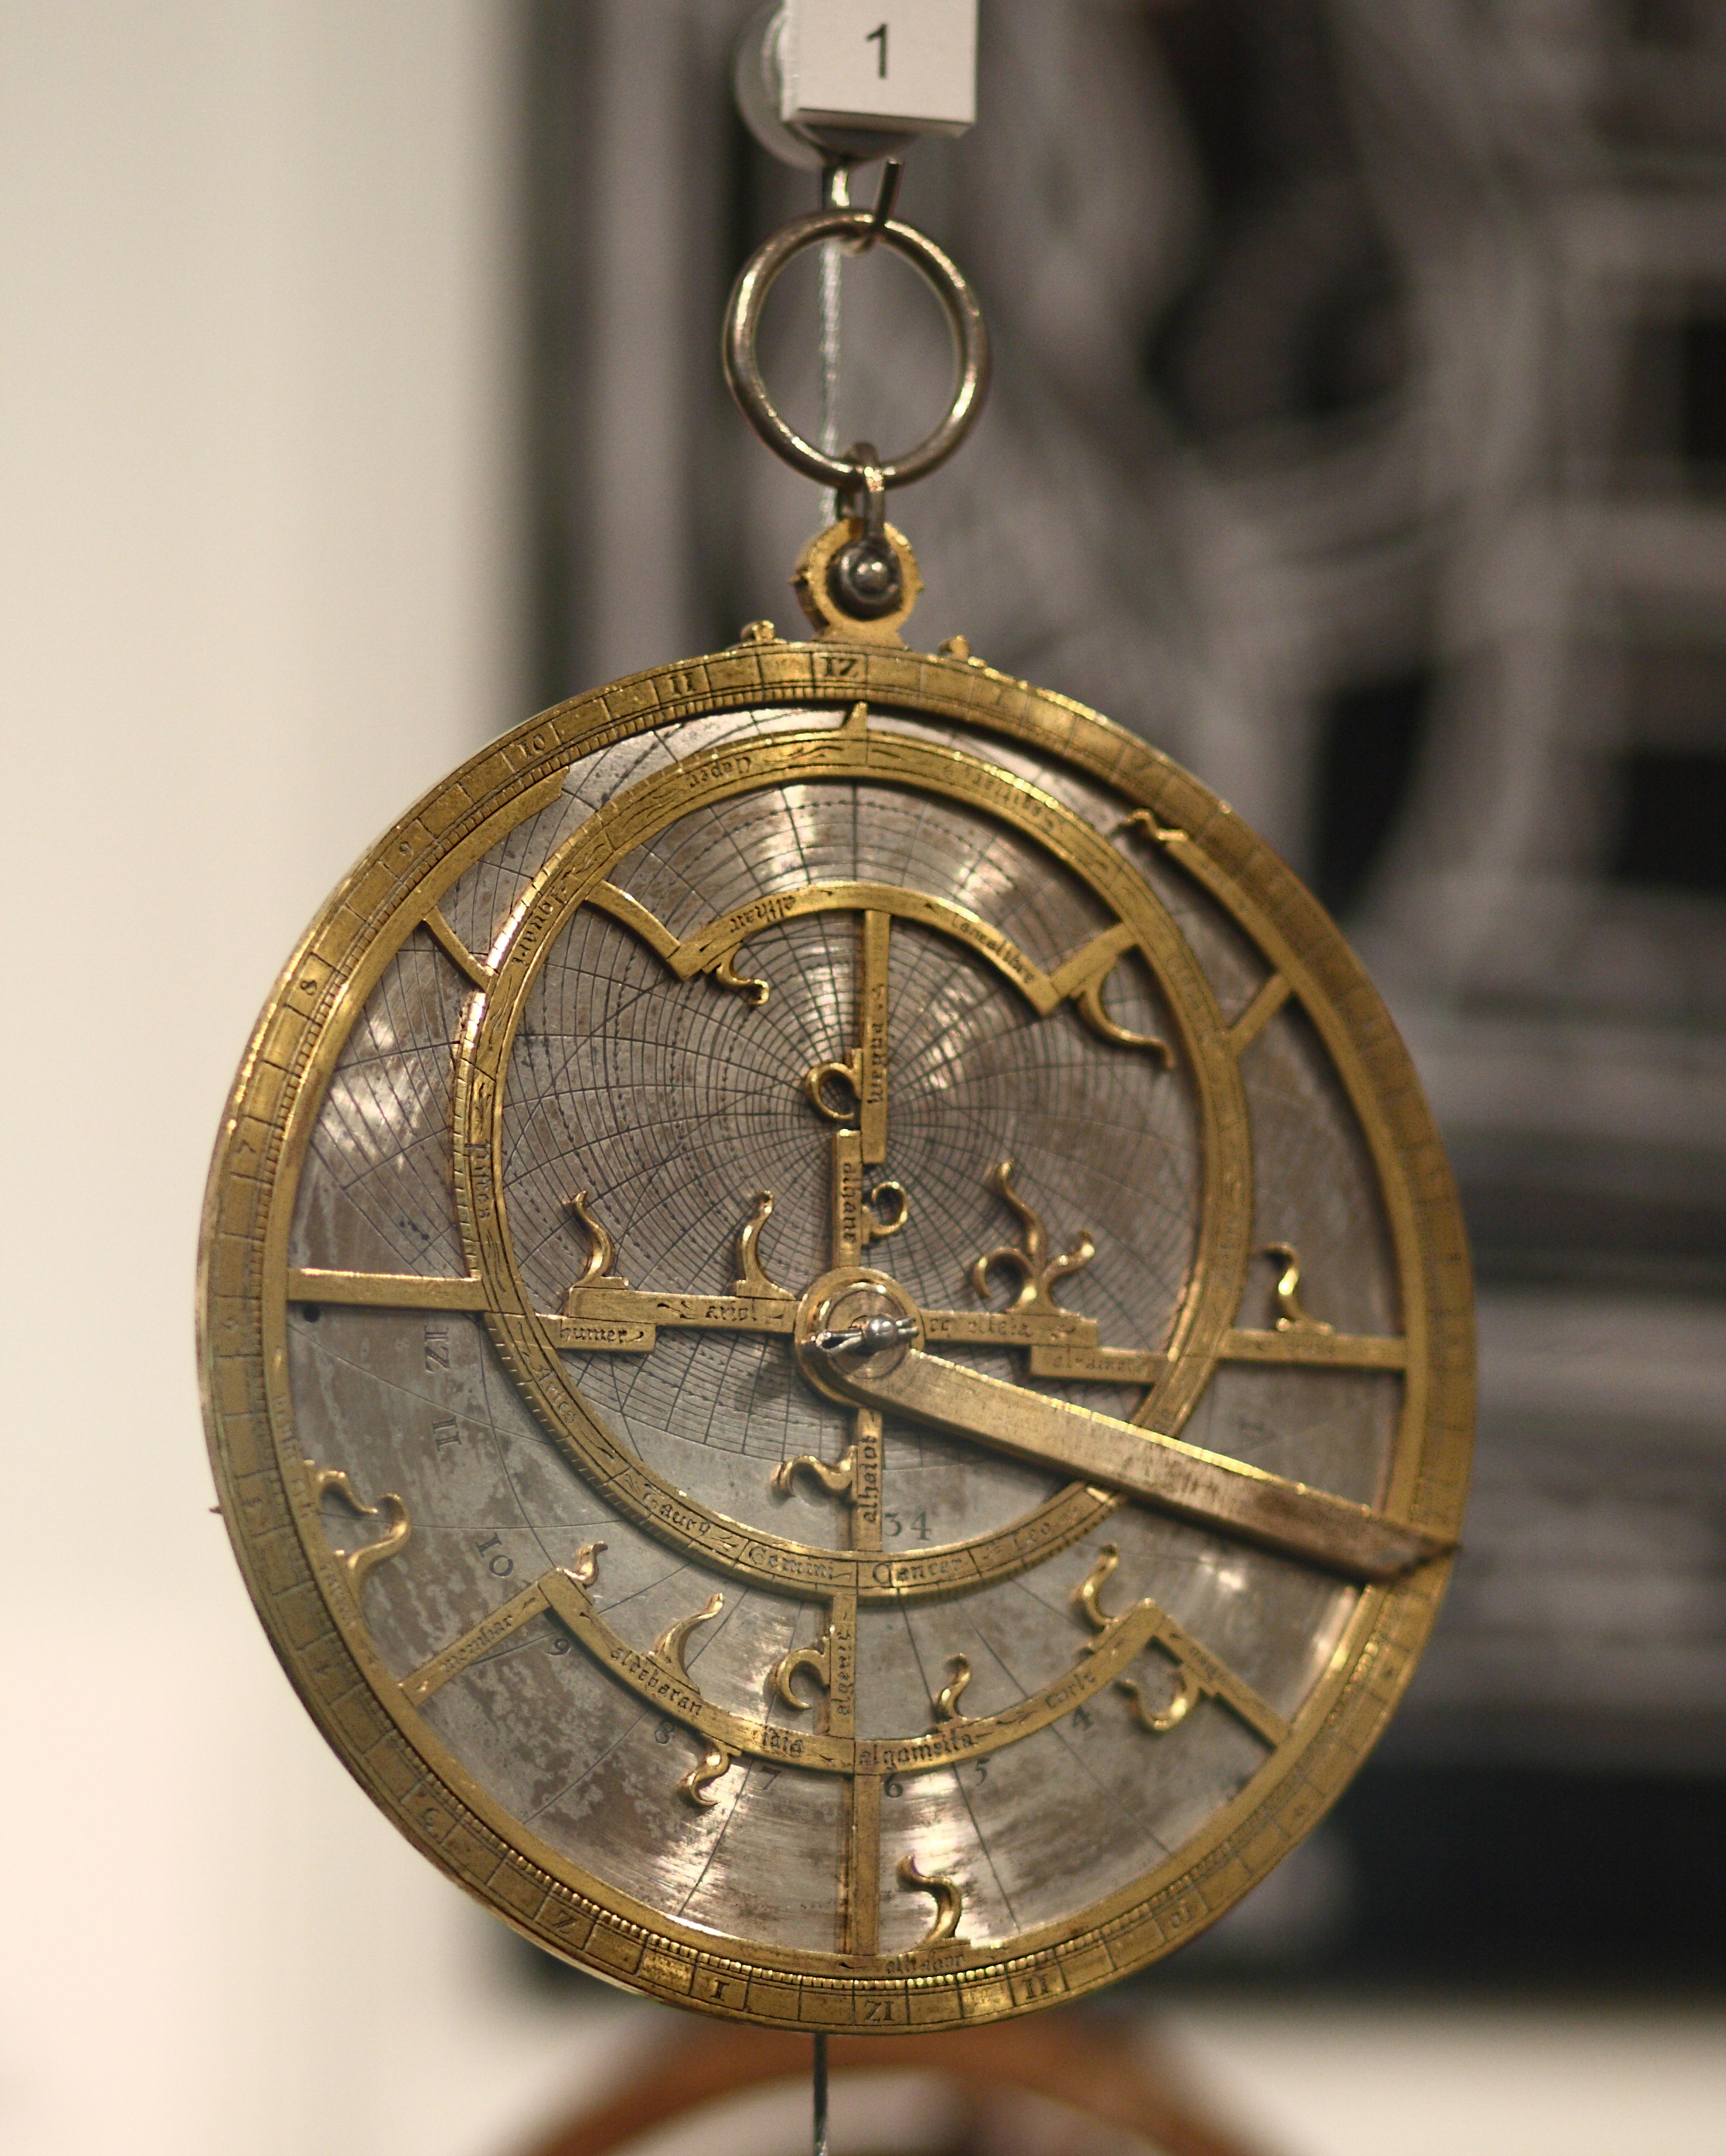 Planispheric Astrolabe of Jean Fusoris, 14th c. (image in public domain)